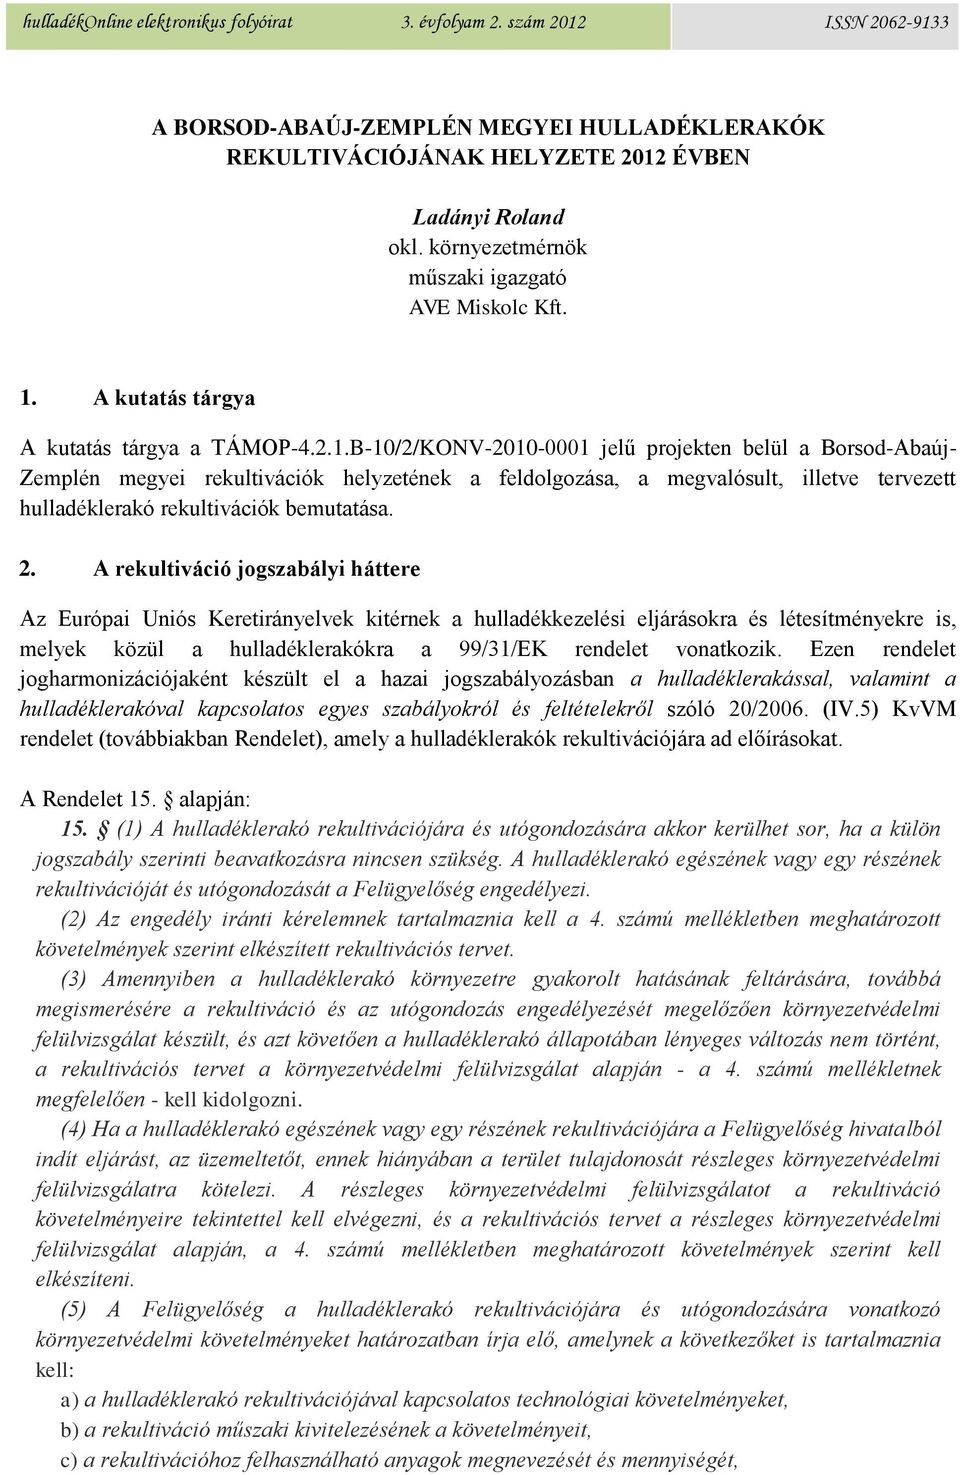 B-10/2/KONV-2010-0001 jelű projekten belül a Borsod-Abaúj- Zemplén megyei rekultivációk helyzetének a feldolgozása, a megvalósult, illetve tervezett hulladéklerakó rekultivációk bemutatása. 2.